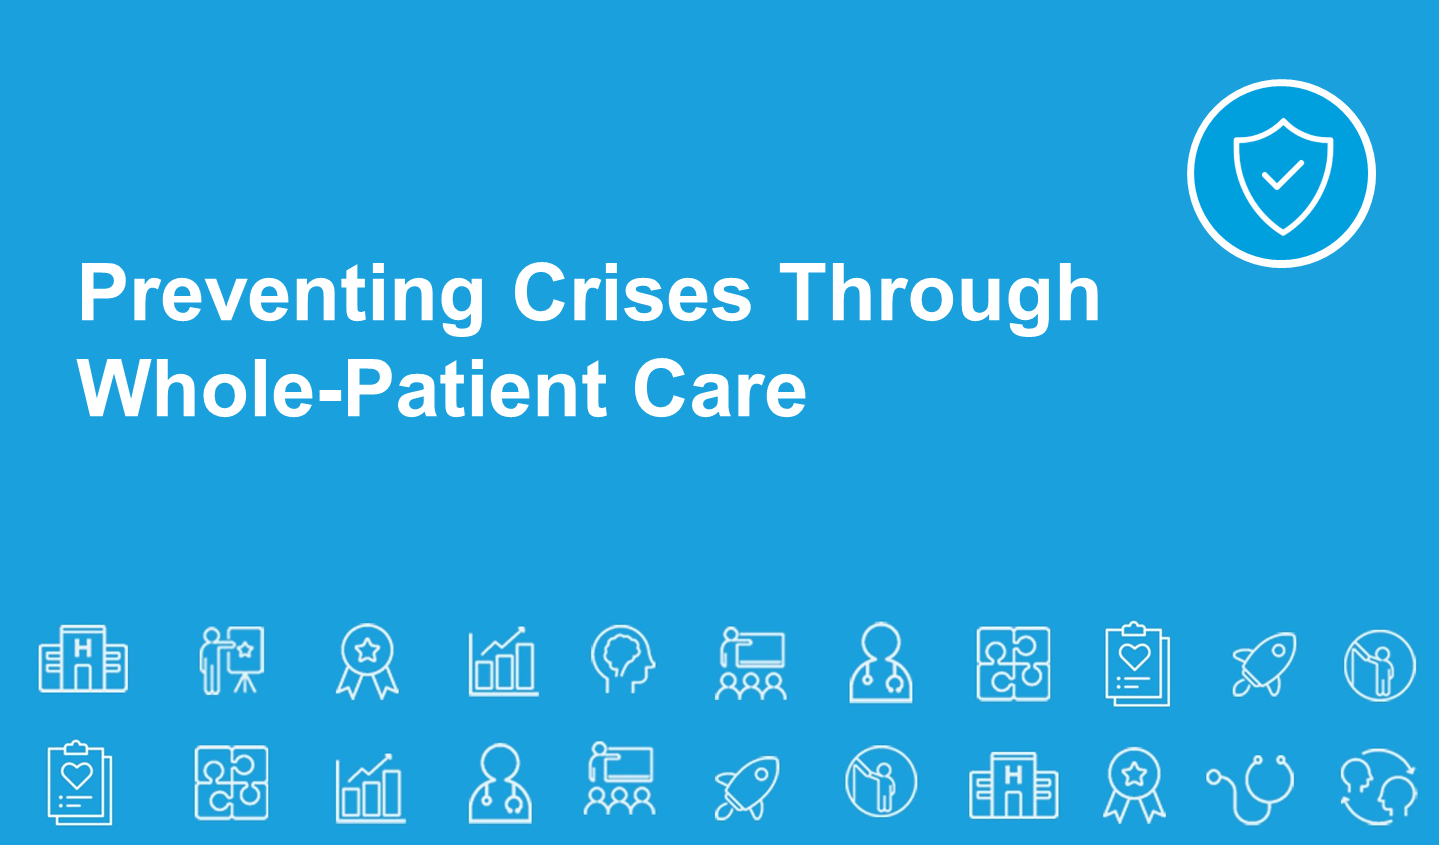 CAPC disponibiliza cursos sobre Prevenção de crises por meio do atendimento integral ao paciente